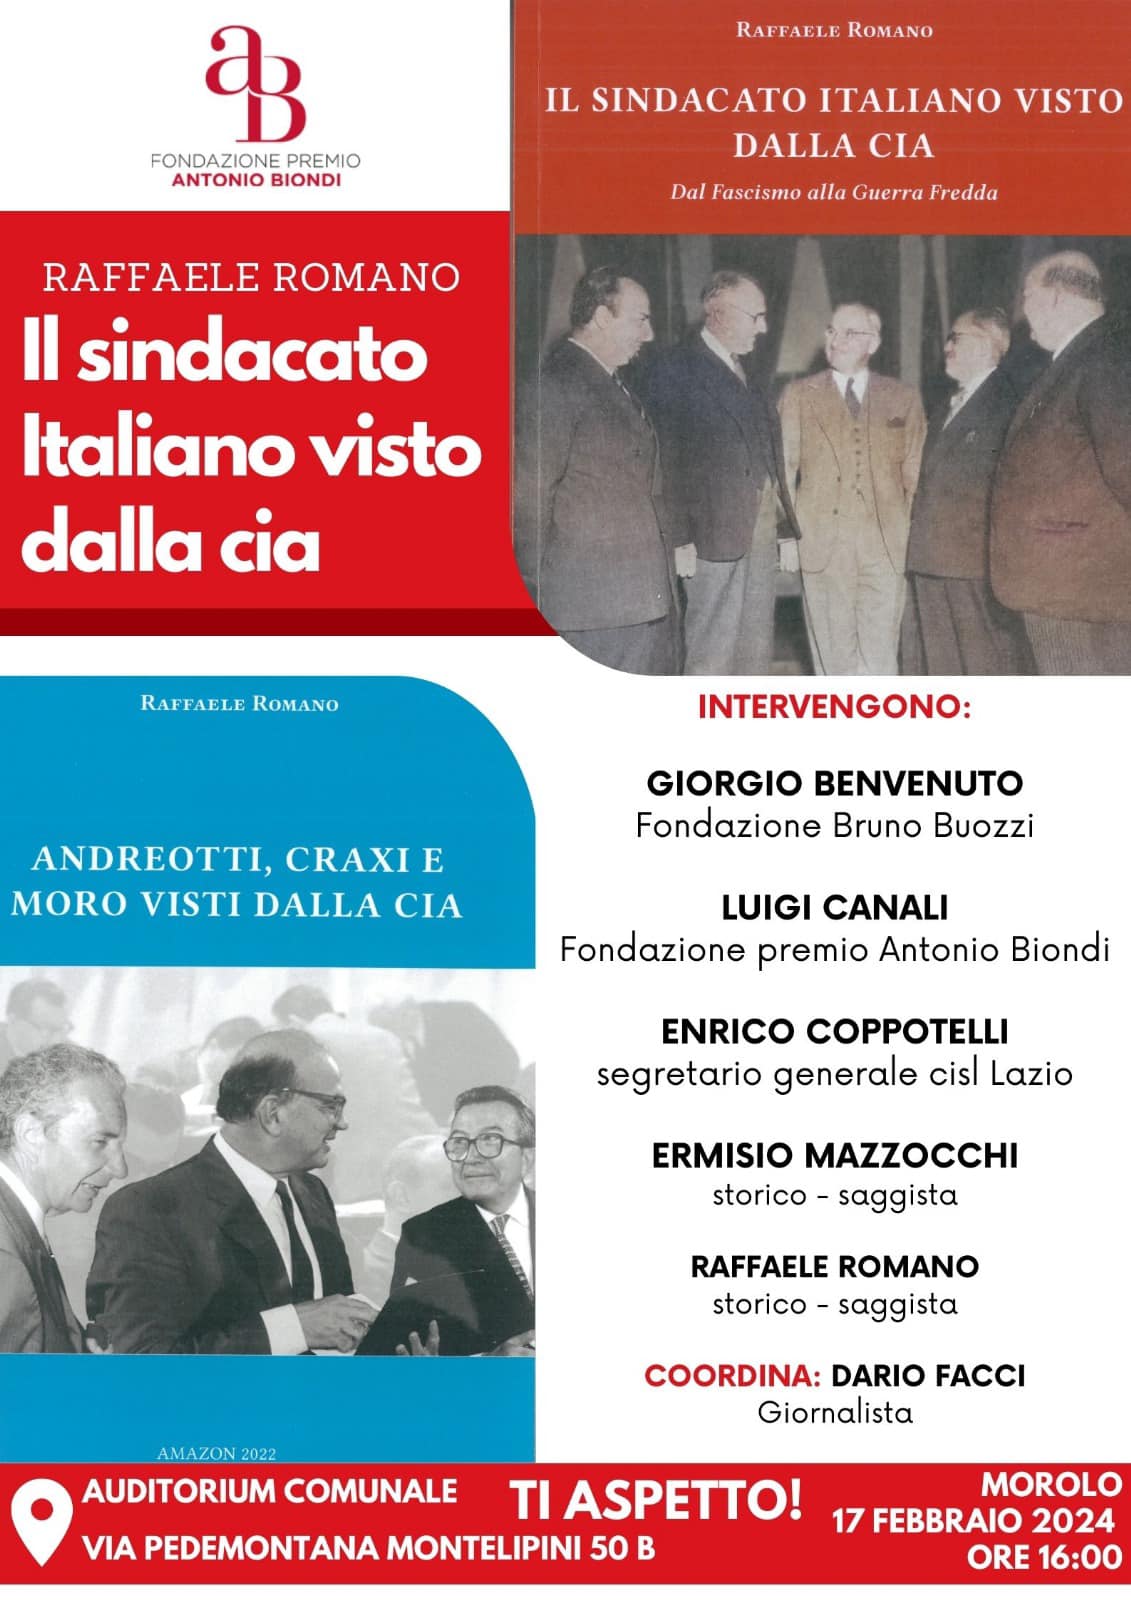 Comune di Morolo: presentazione del libro "il sindacato italiano visto dalla Cia" @ Comune di Morolo